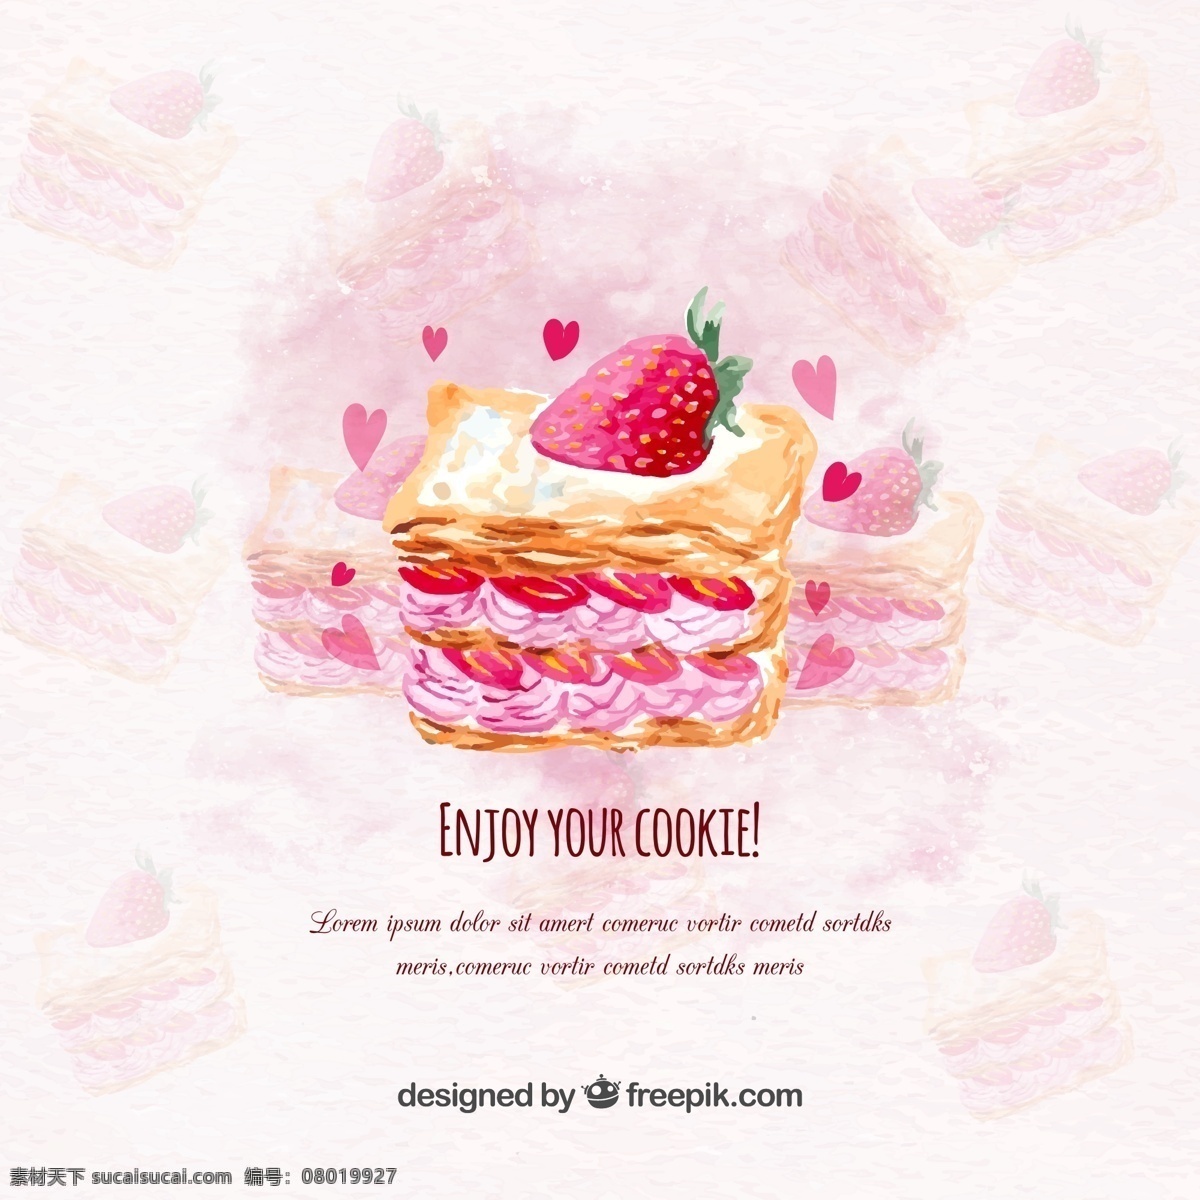 彩绘 奶油 草莓 蛋糕 矢量 矢量素材 奶油草莓 草莓蛋糕